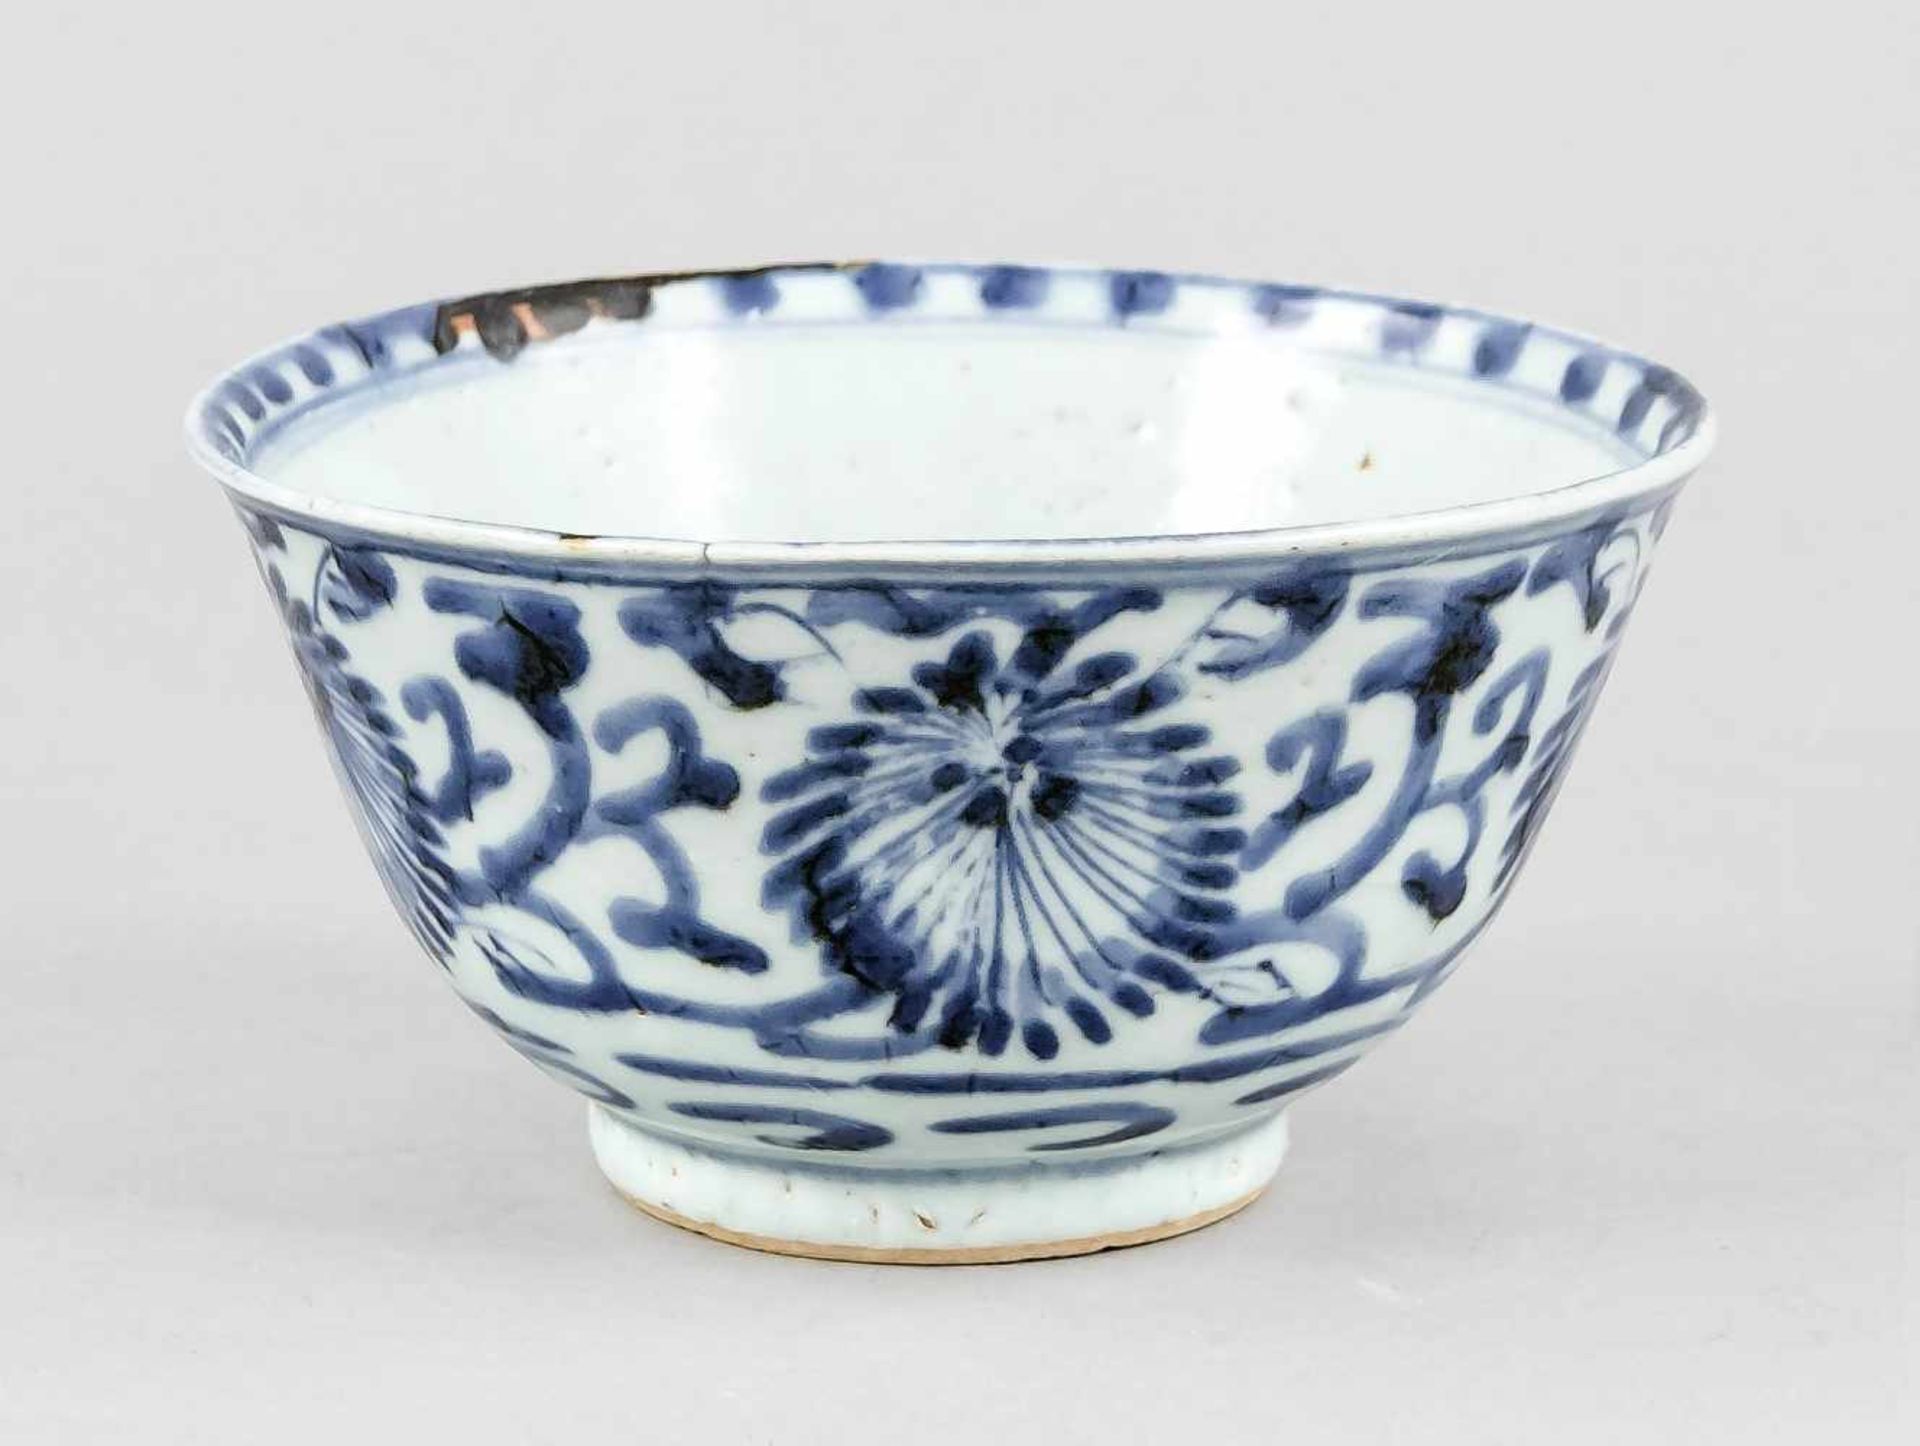 Blau-weiße Schale, China, wohl Ming/Qing-zeitlich, Spiegel und Außenwandung mitBlütenranken-Dekor in - Bild 2 aus 2